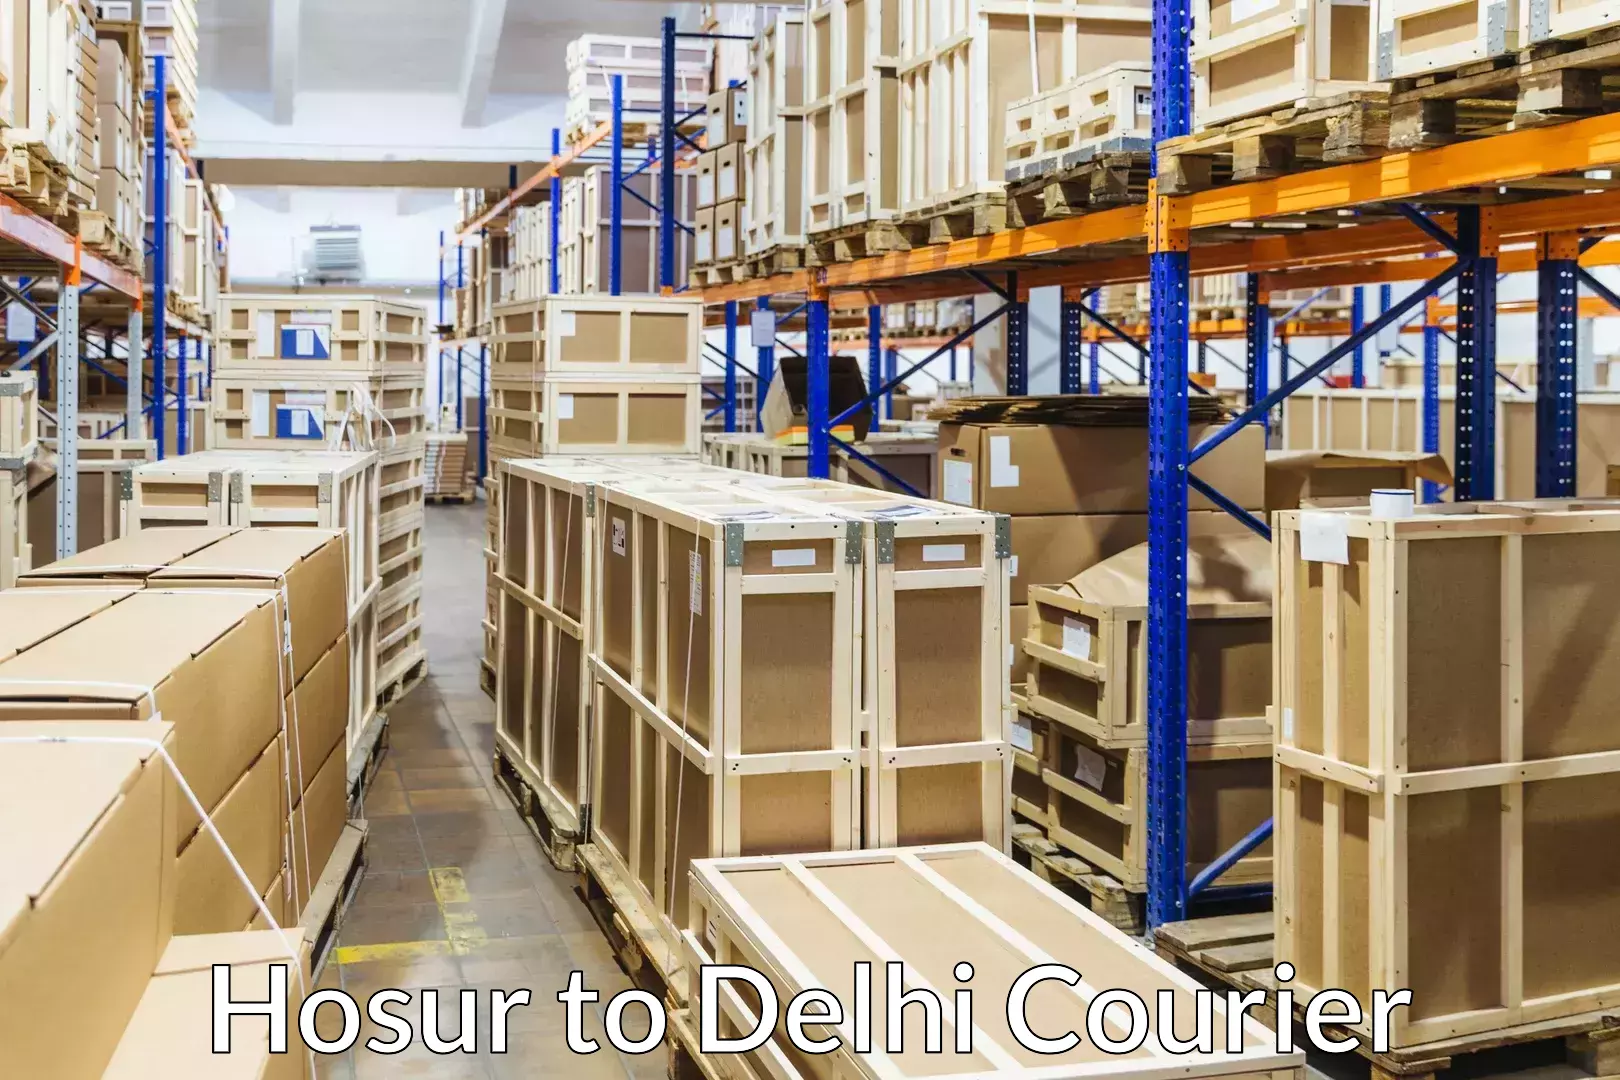 Household goods transporters Hosur to University of Delhi